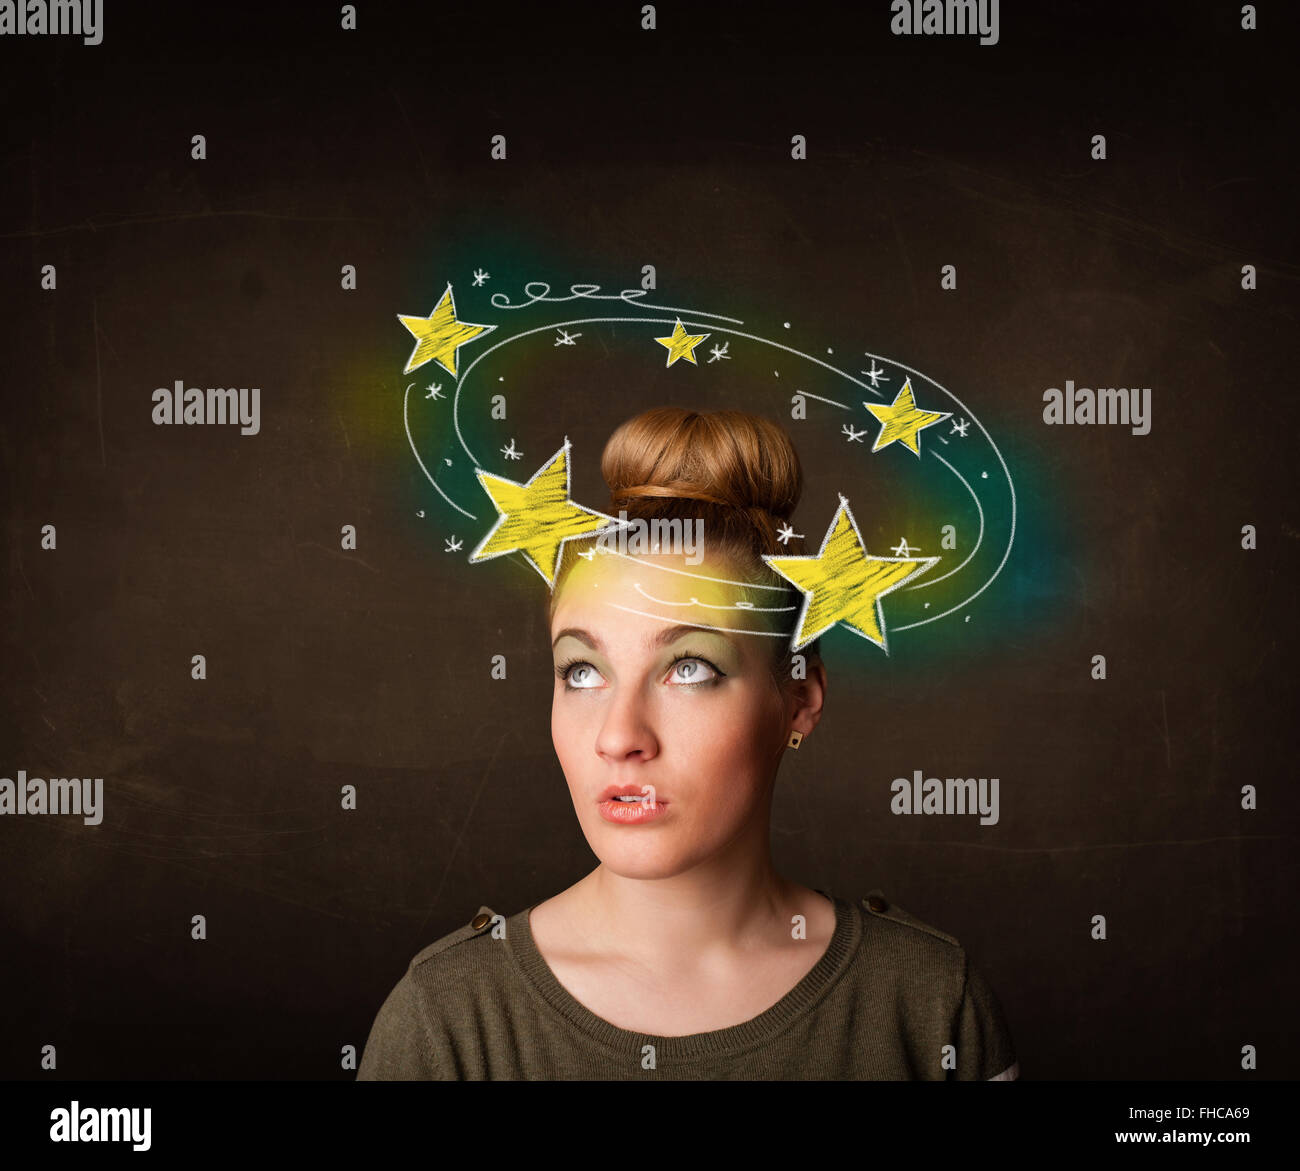 Mädchen mit gelben Sternen Circleing um ihren Kopf Abbildung Stockfoto